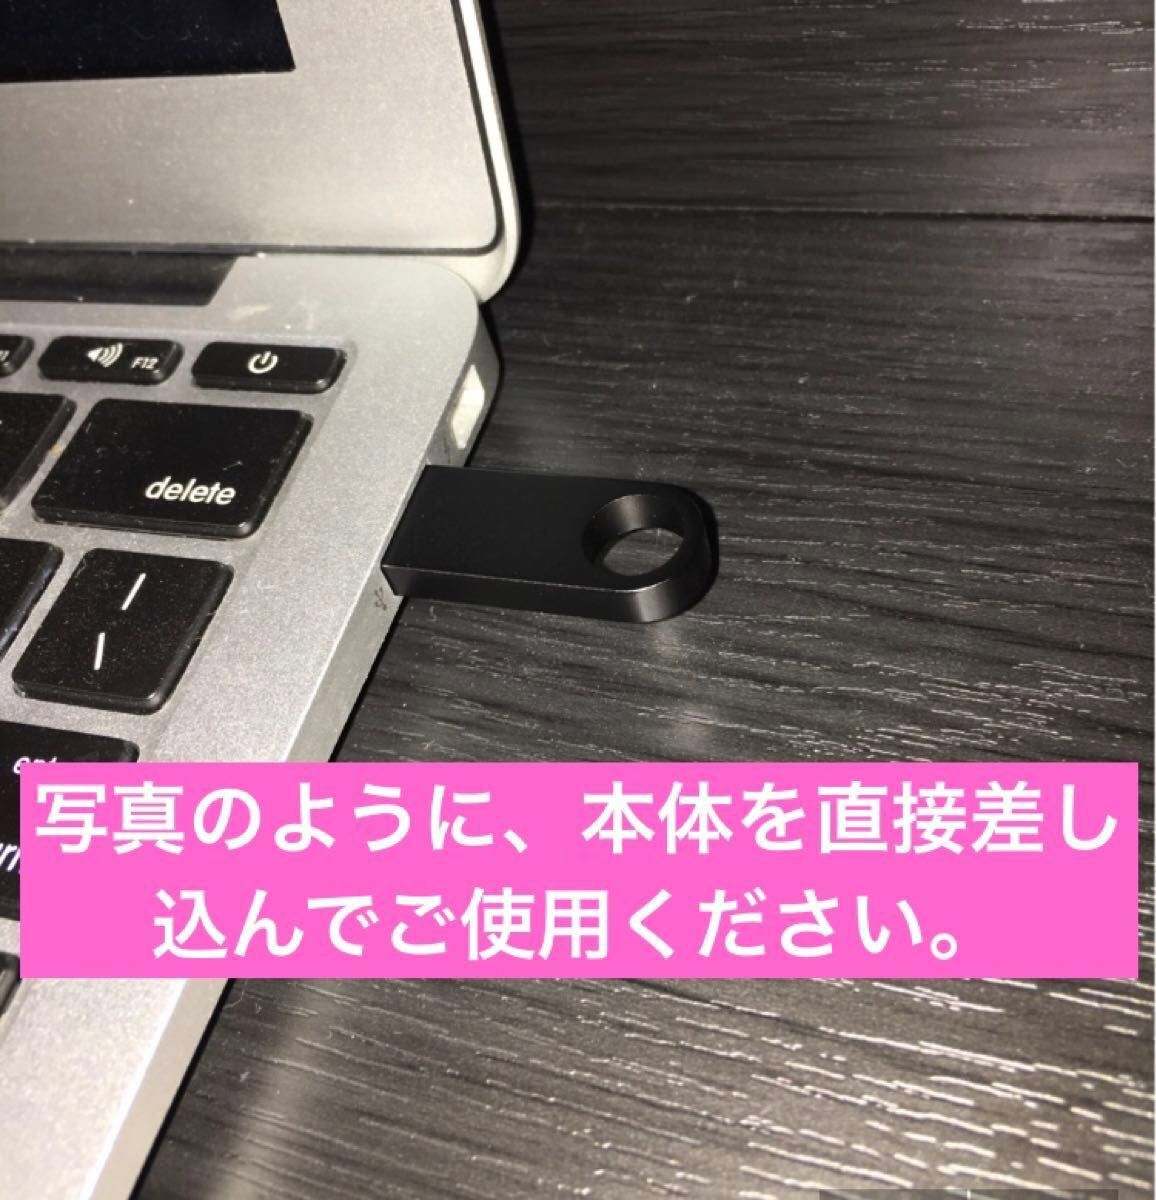 【即出荷】Mac OS Ventura インストーラー USB